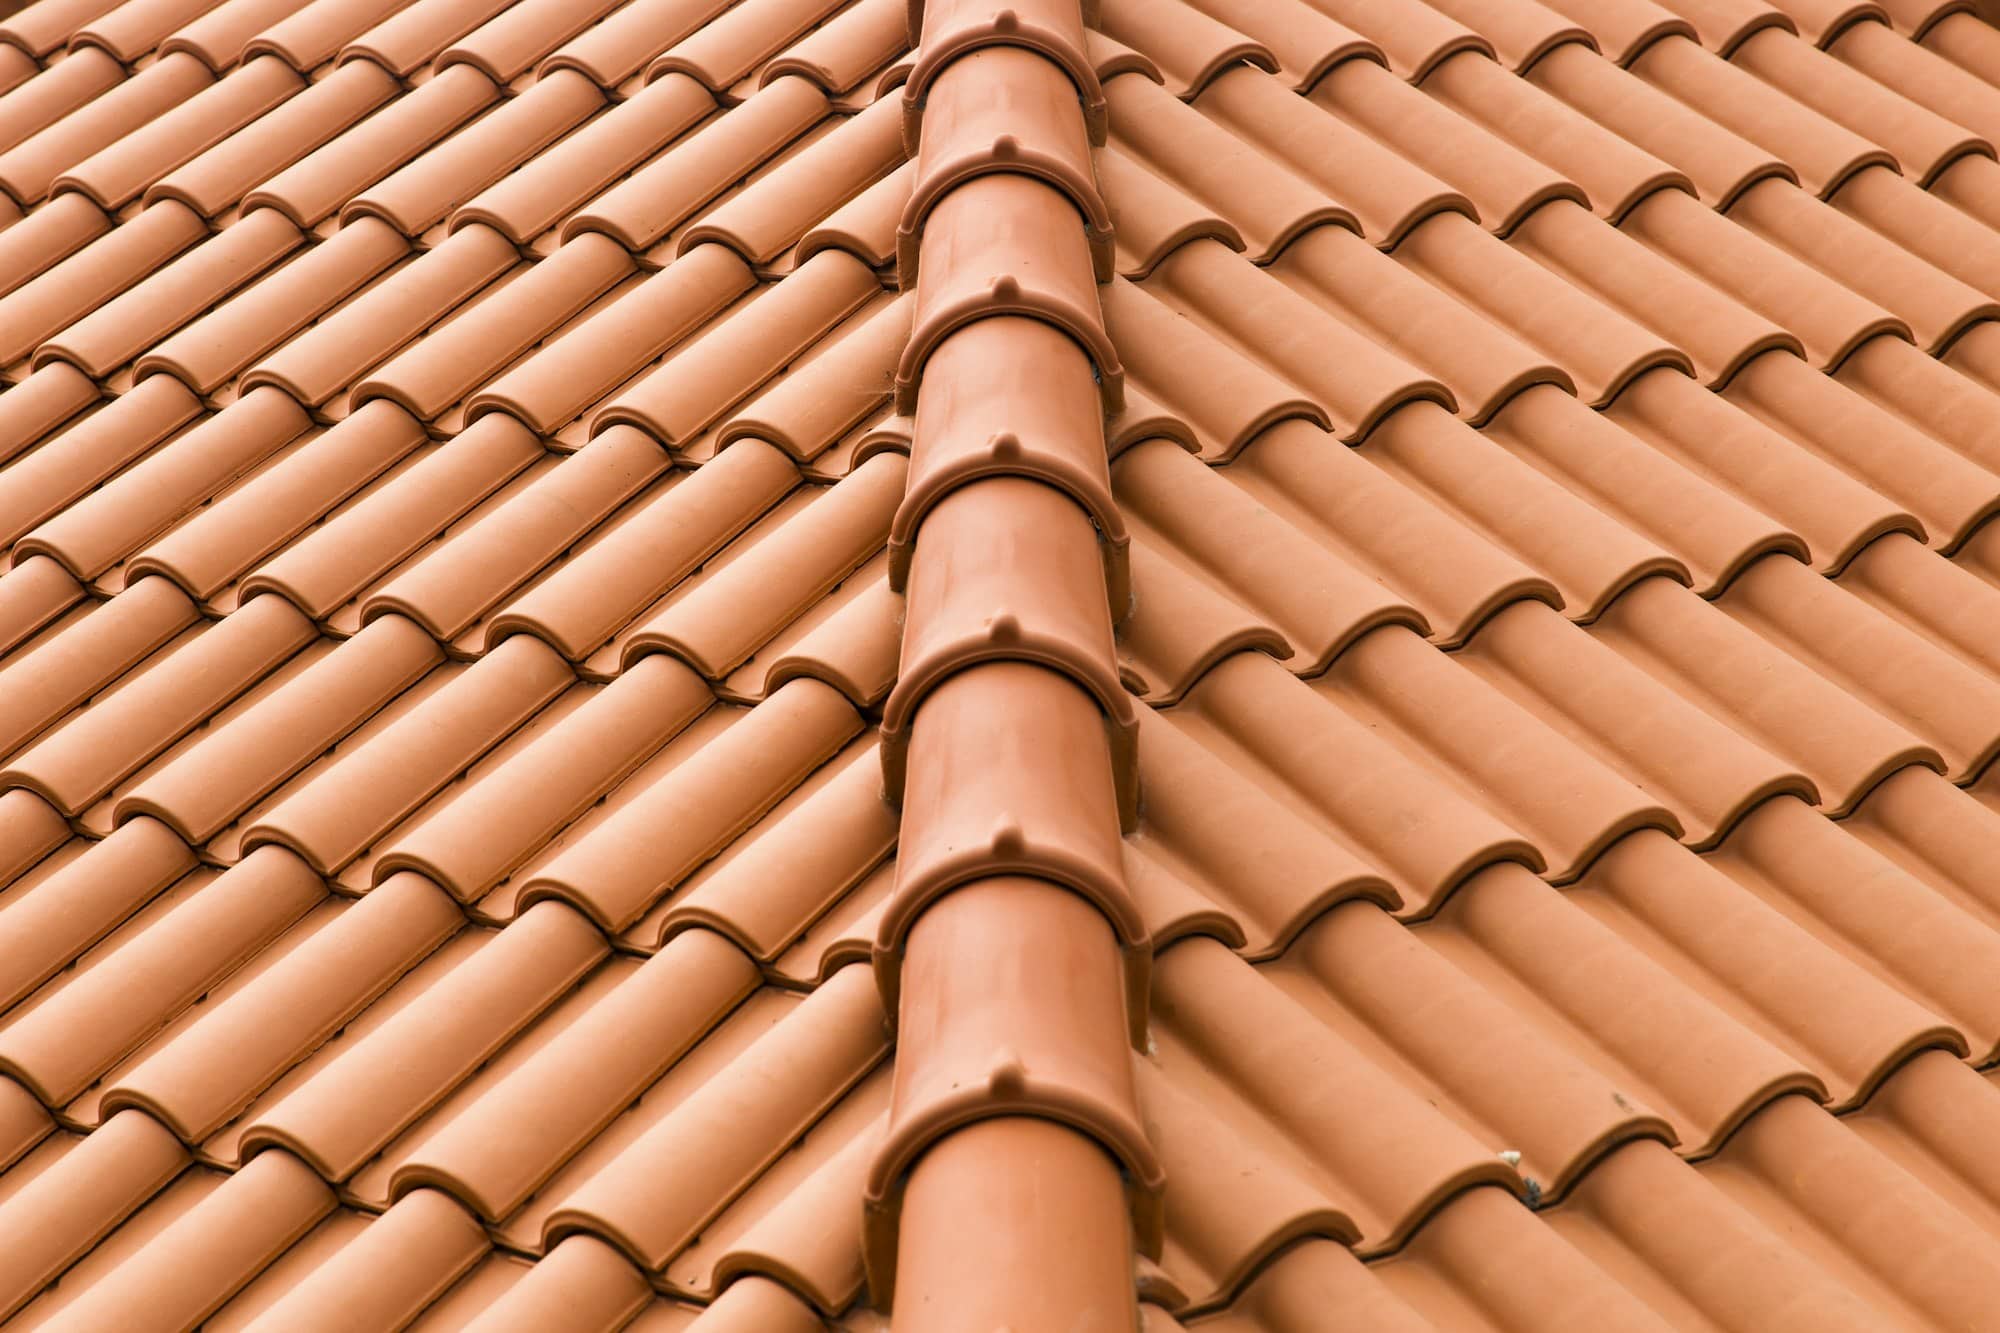 Closeup of roof tiles